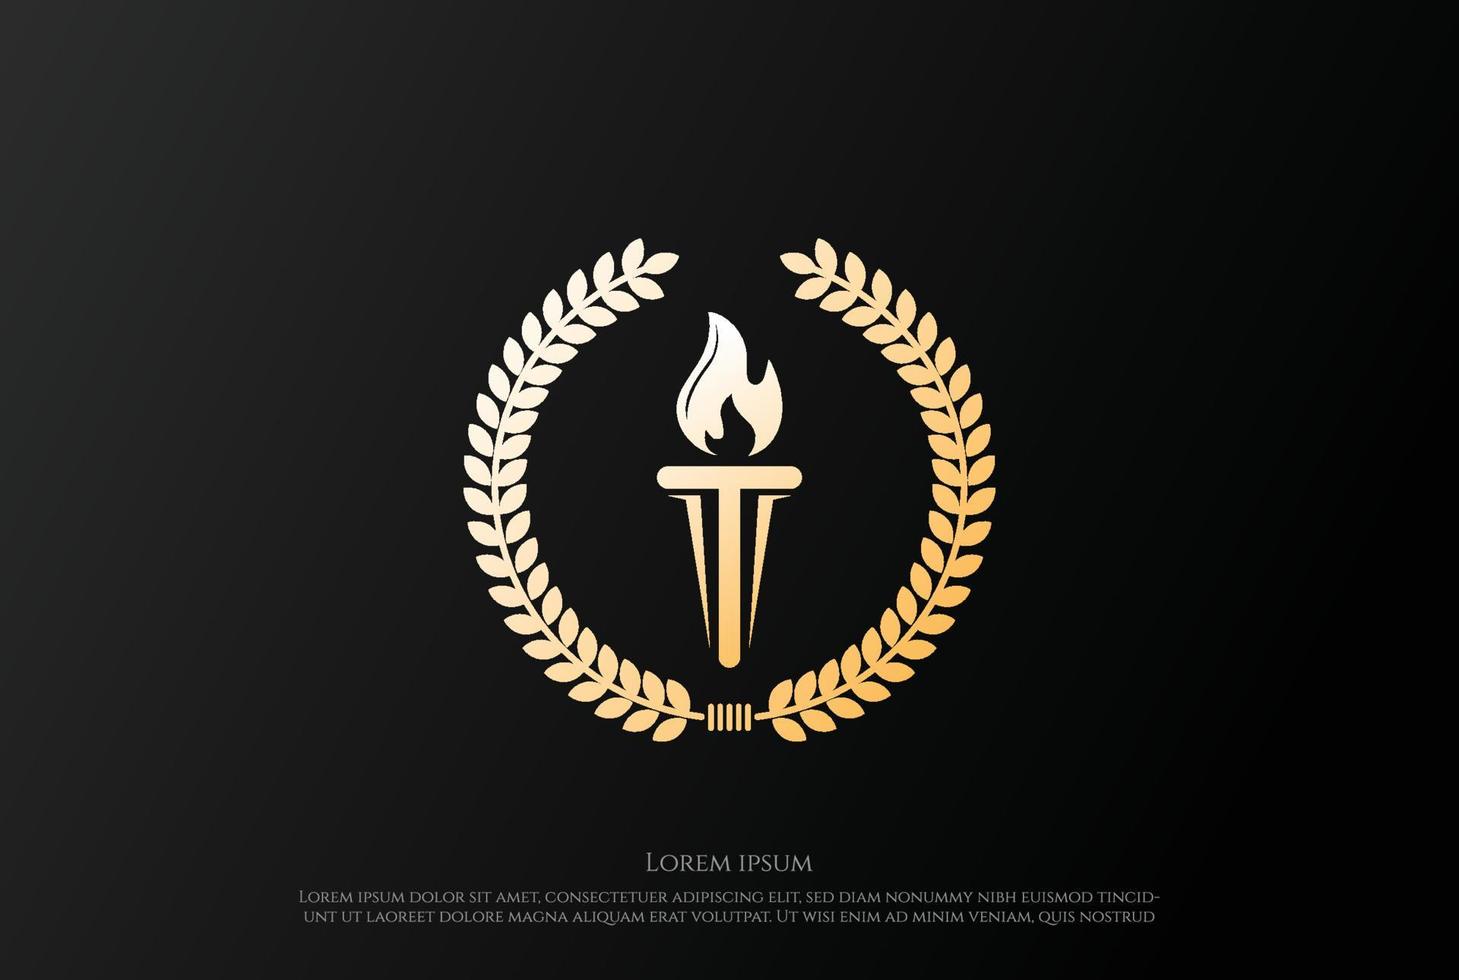 lusso d'oro bruciare torcia con alloro foglia distintivo emblema logo vettore